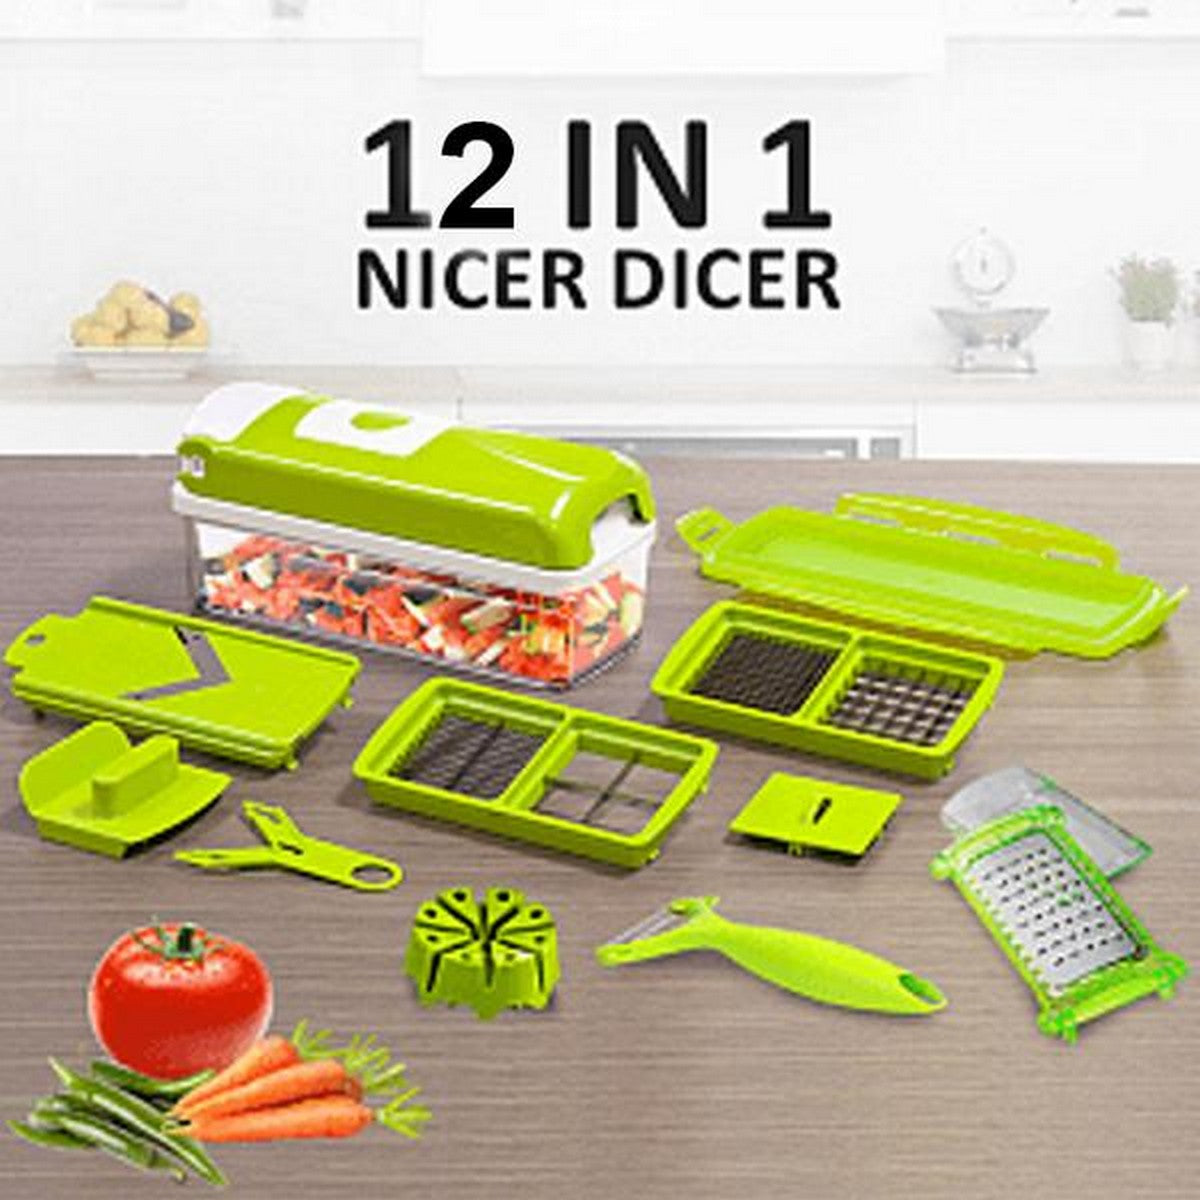 Nicer Dicer Plus Vegetable Slicer Vegetables and Fruits